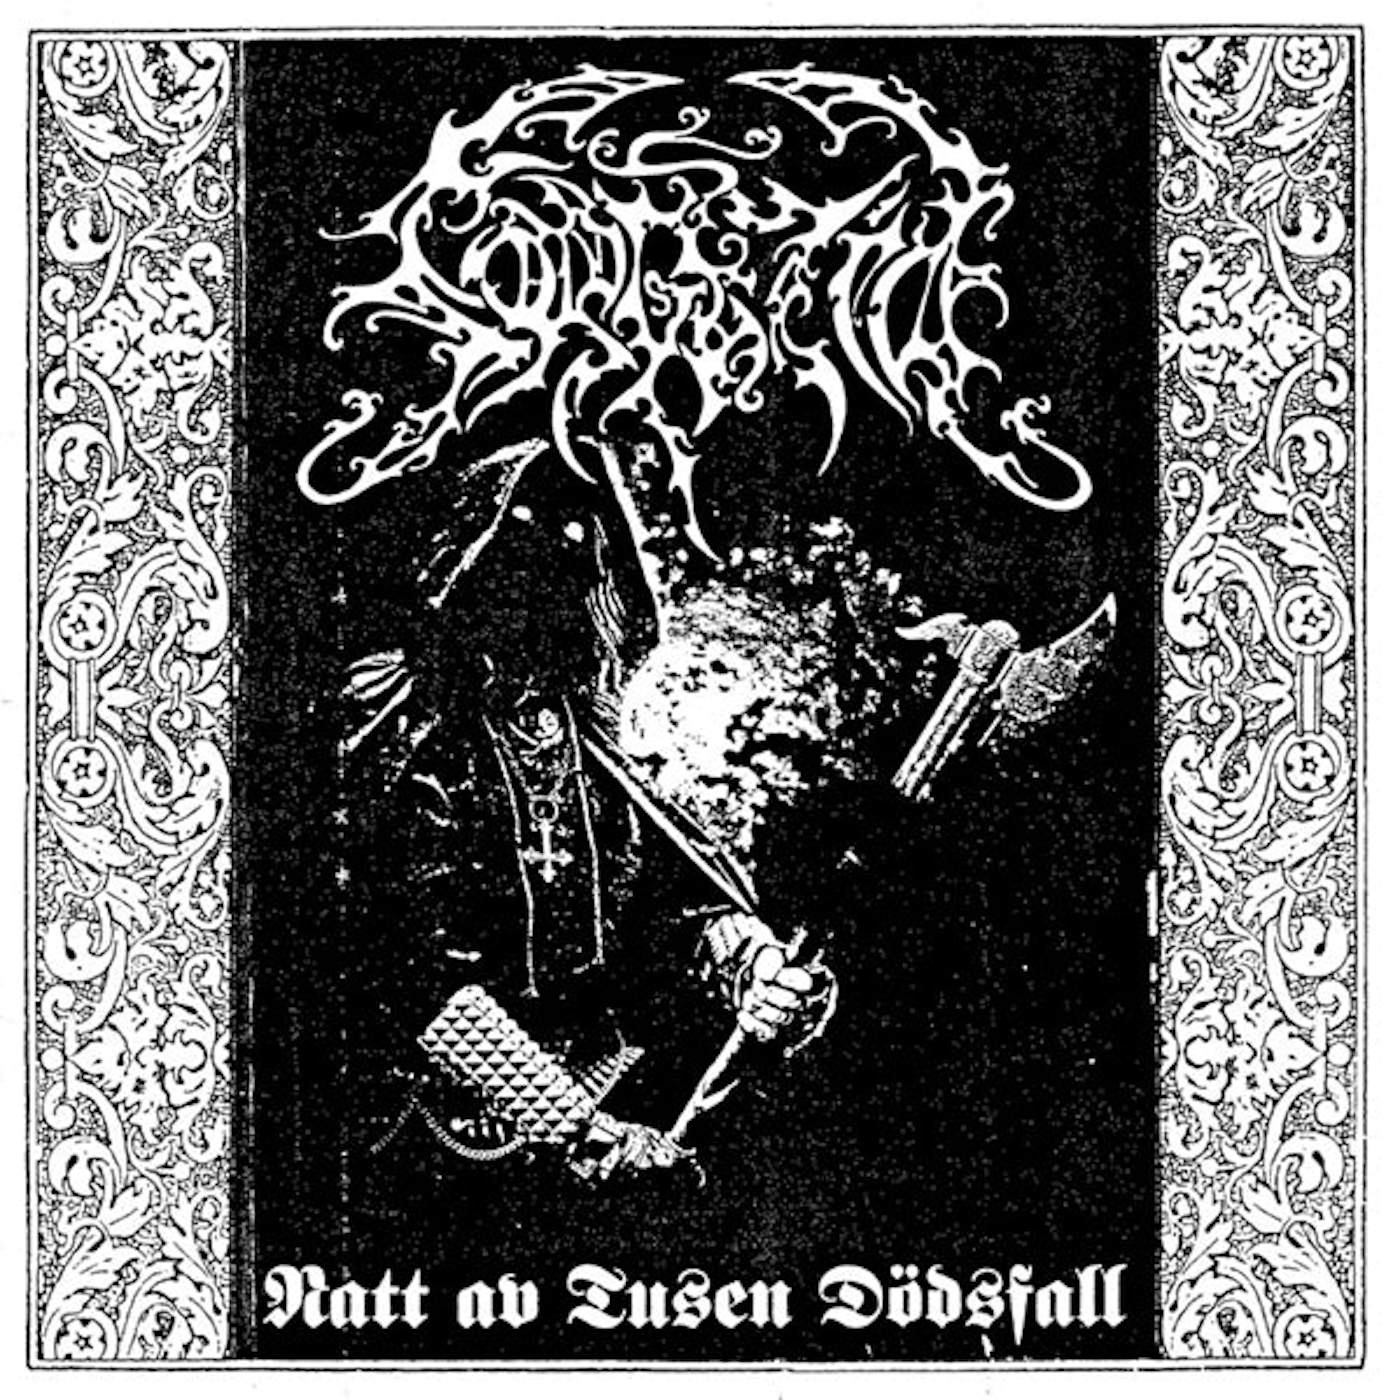 Sorgetid LP - Natt Av Tusen Dodsfall (Vinyl)